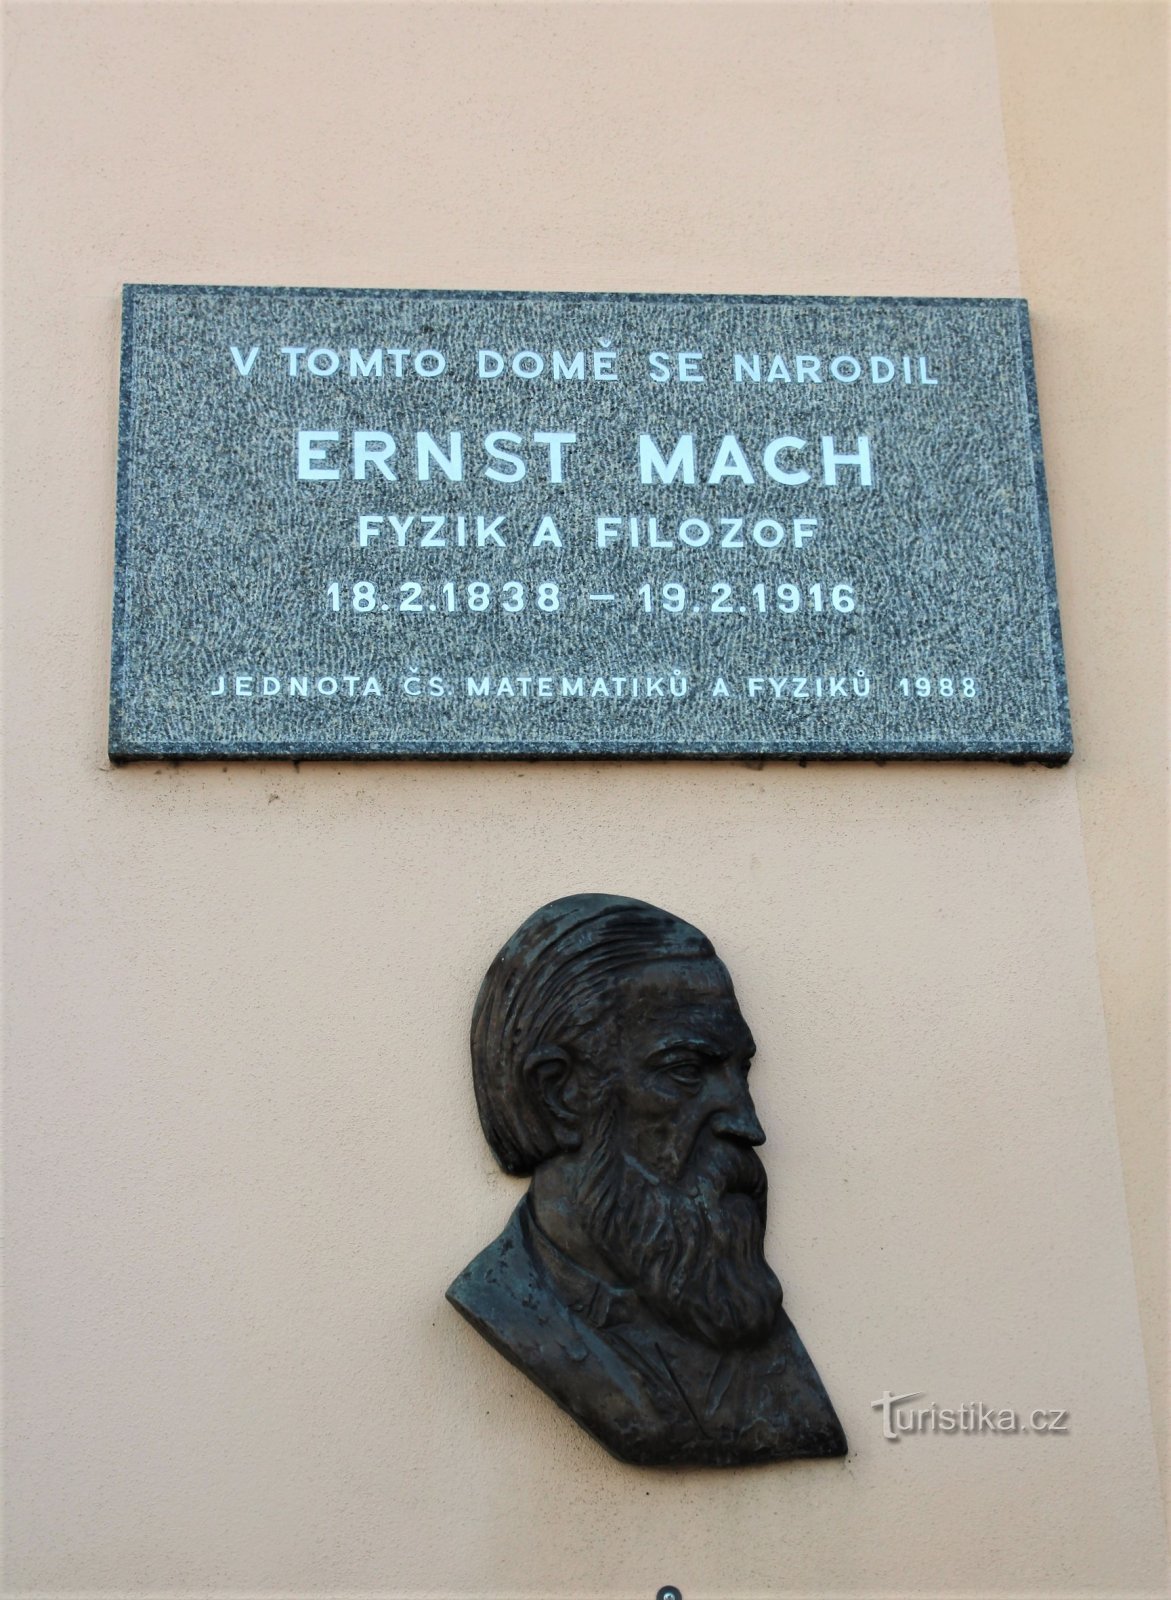 Placa comemorativa de Ernst Mach no edifício do castelo